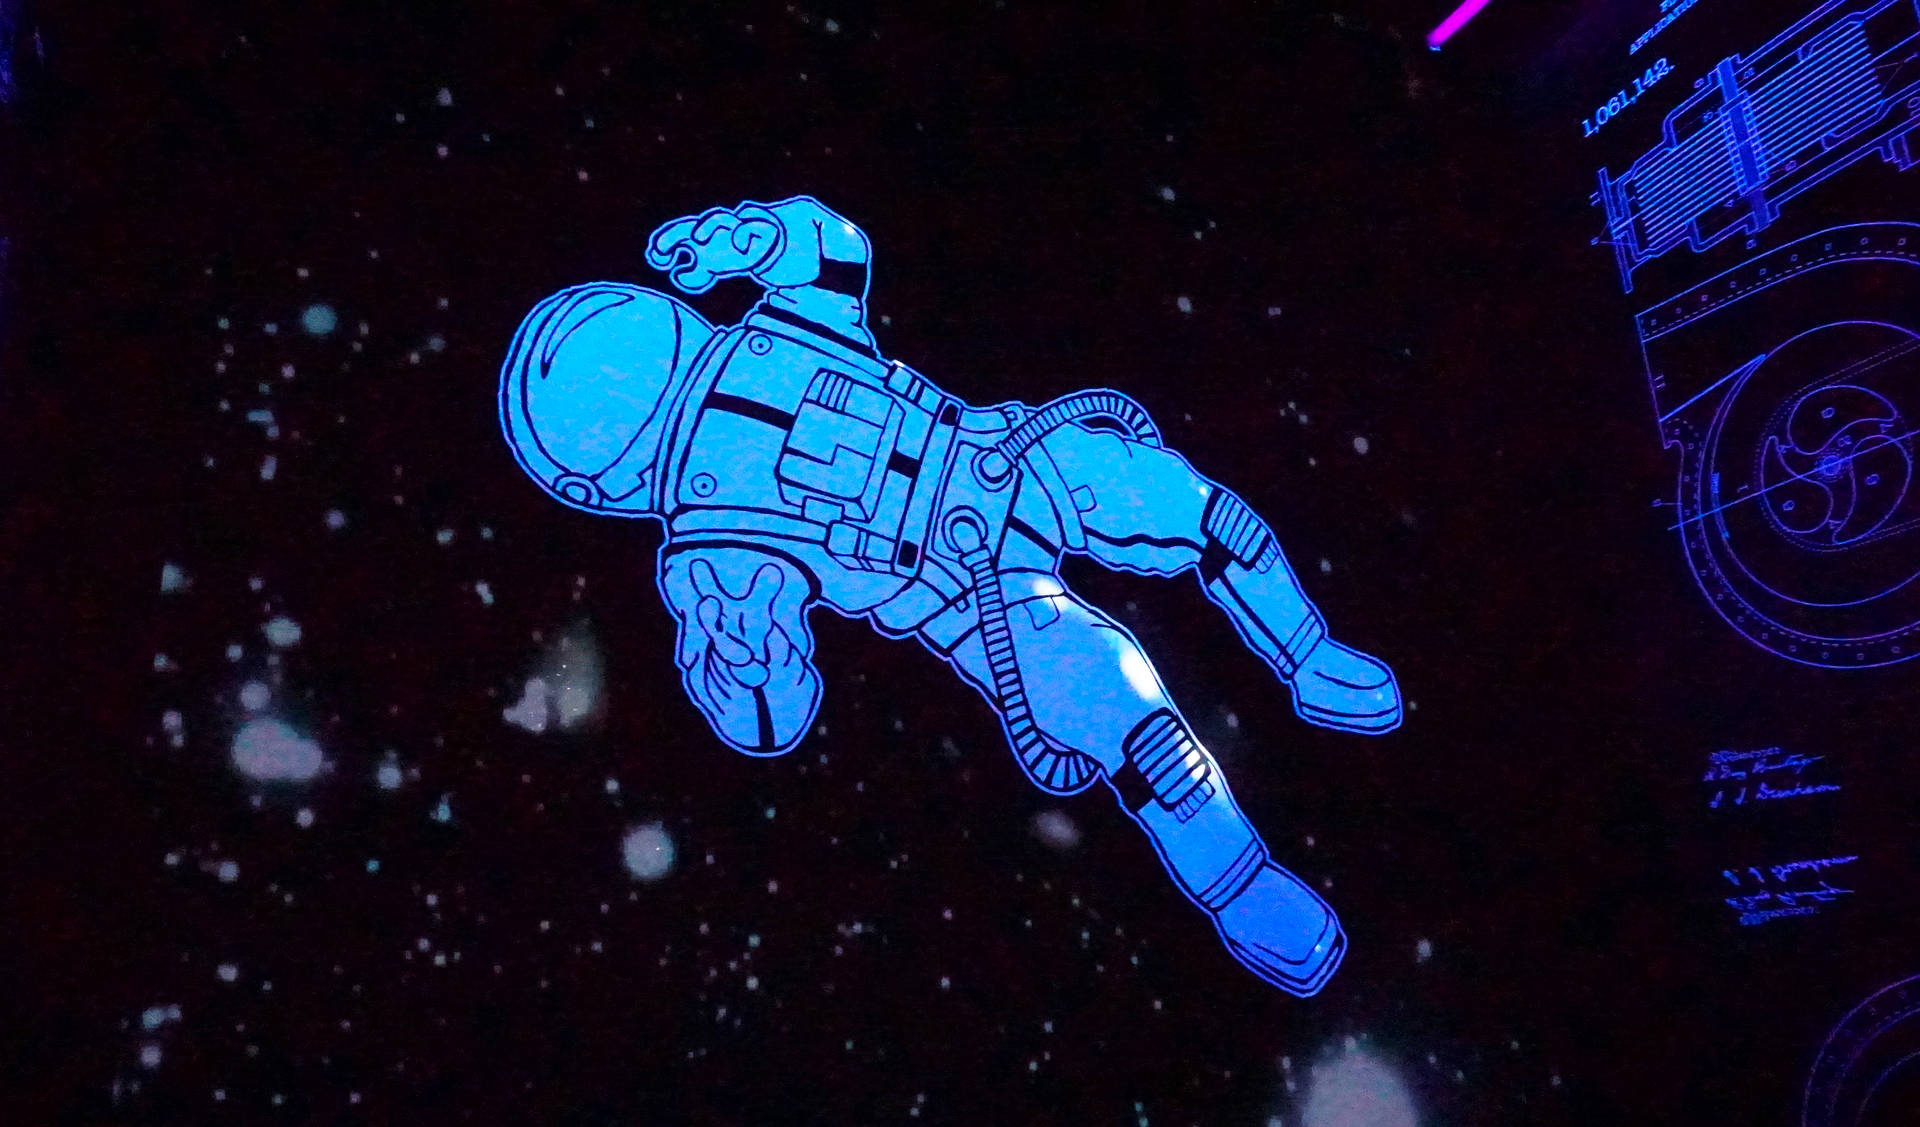 Cartoon Art Of Astronaut In Space